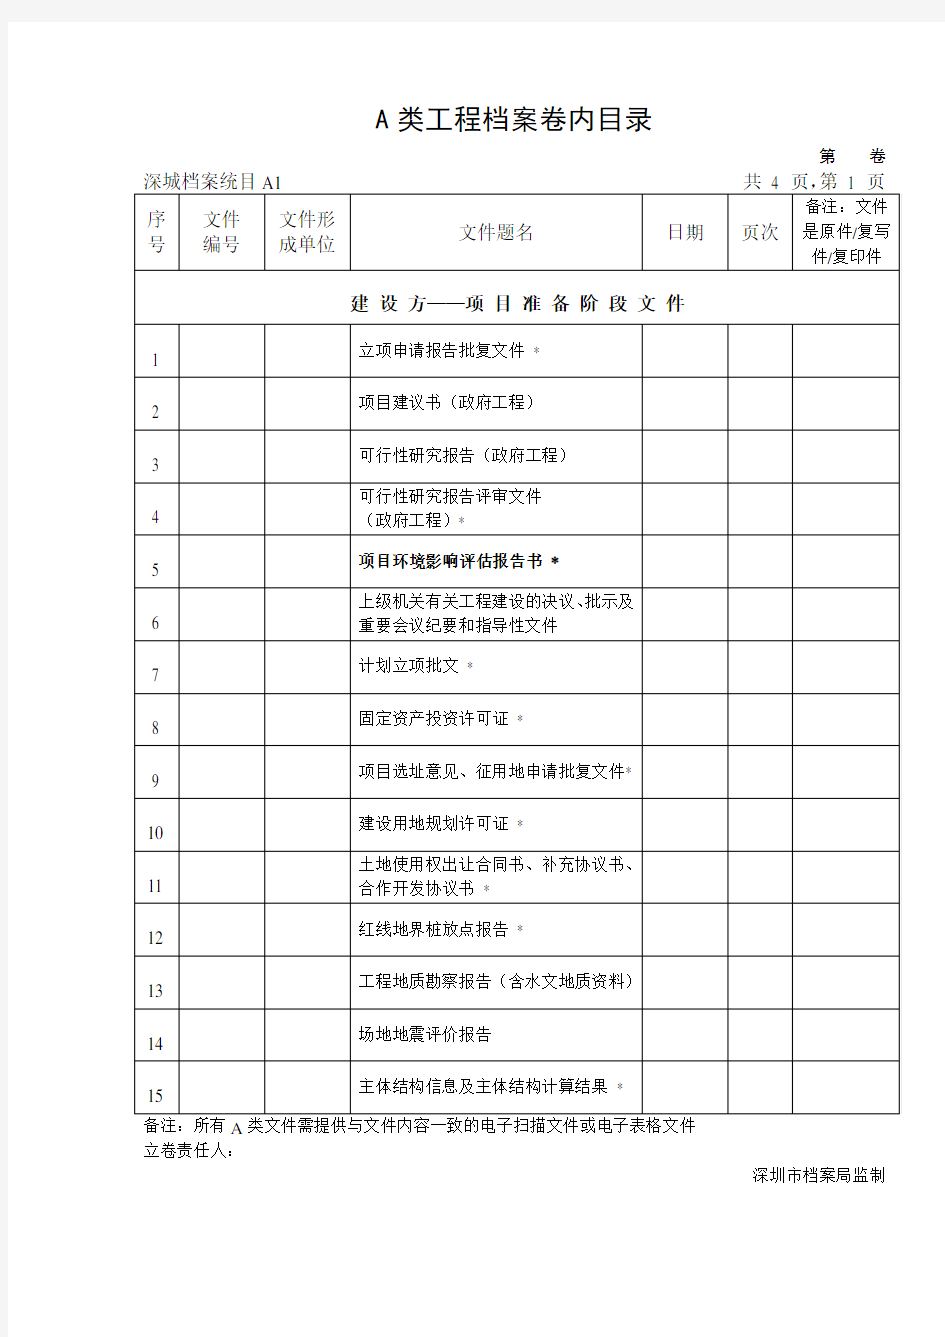 深圳市建筑工程A类工程档案卷内目录(对应统一用表深圳版)